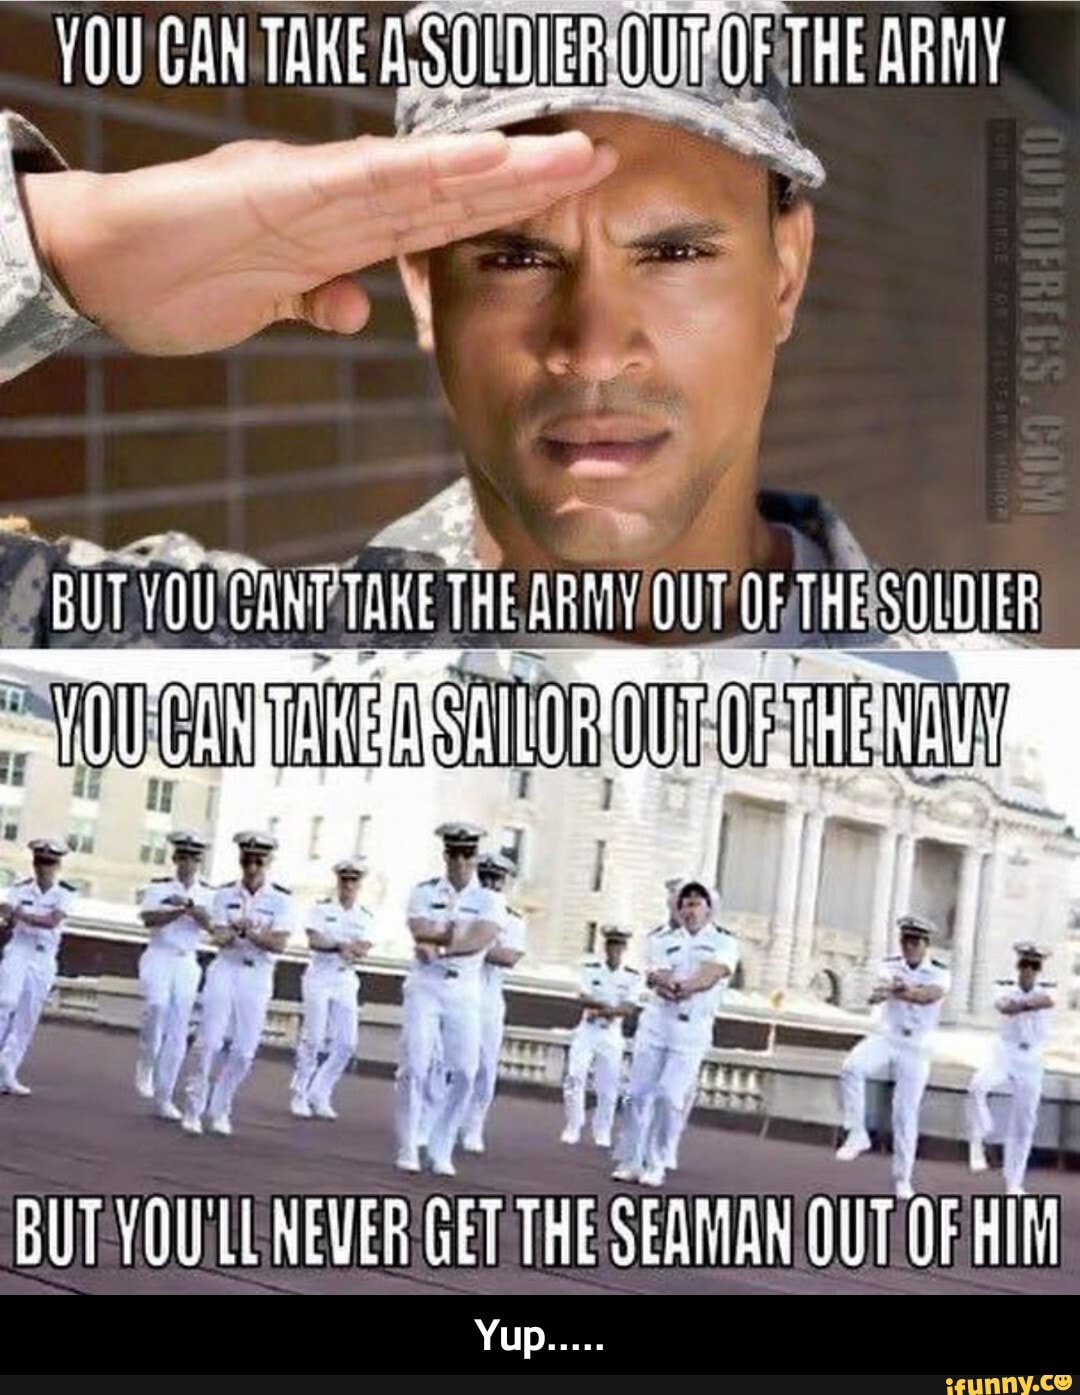 Мемы про моряков